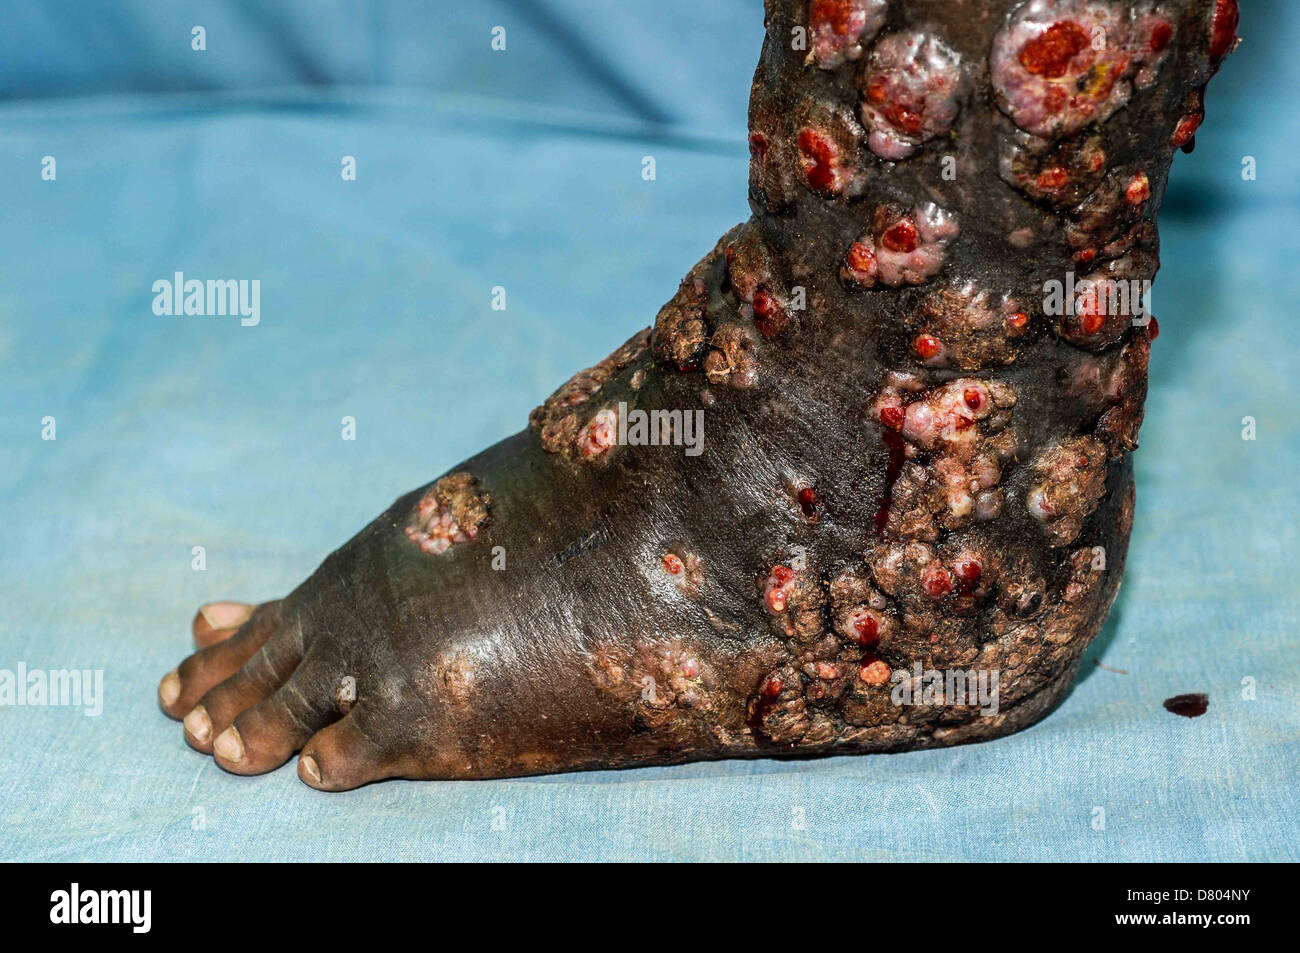 Bein ein 37 Jahre alter Mann leiden unter schweren Myzetom in seinem linken Fuß und Unterschenkel. Stockfoto